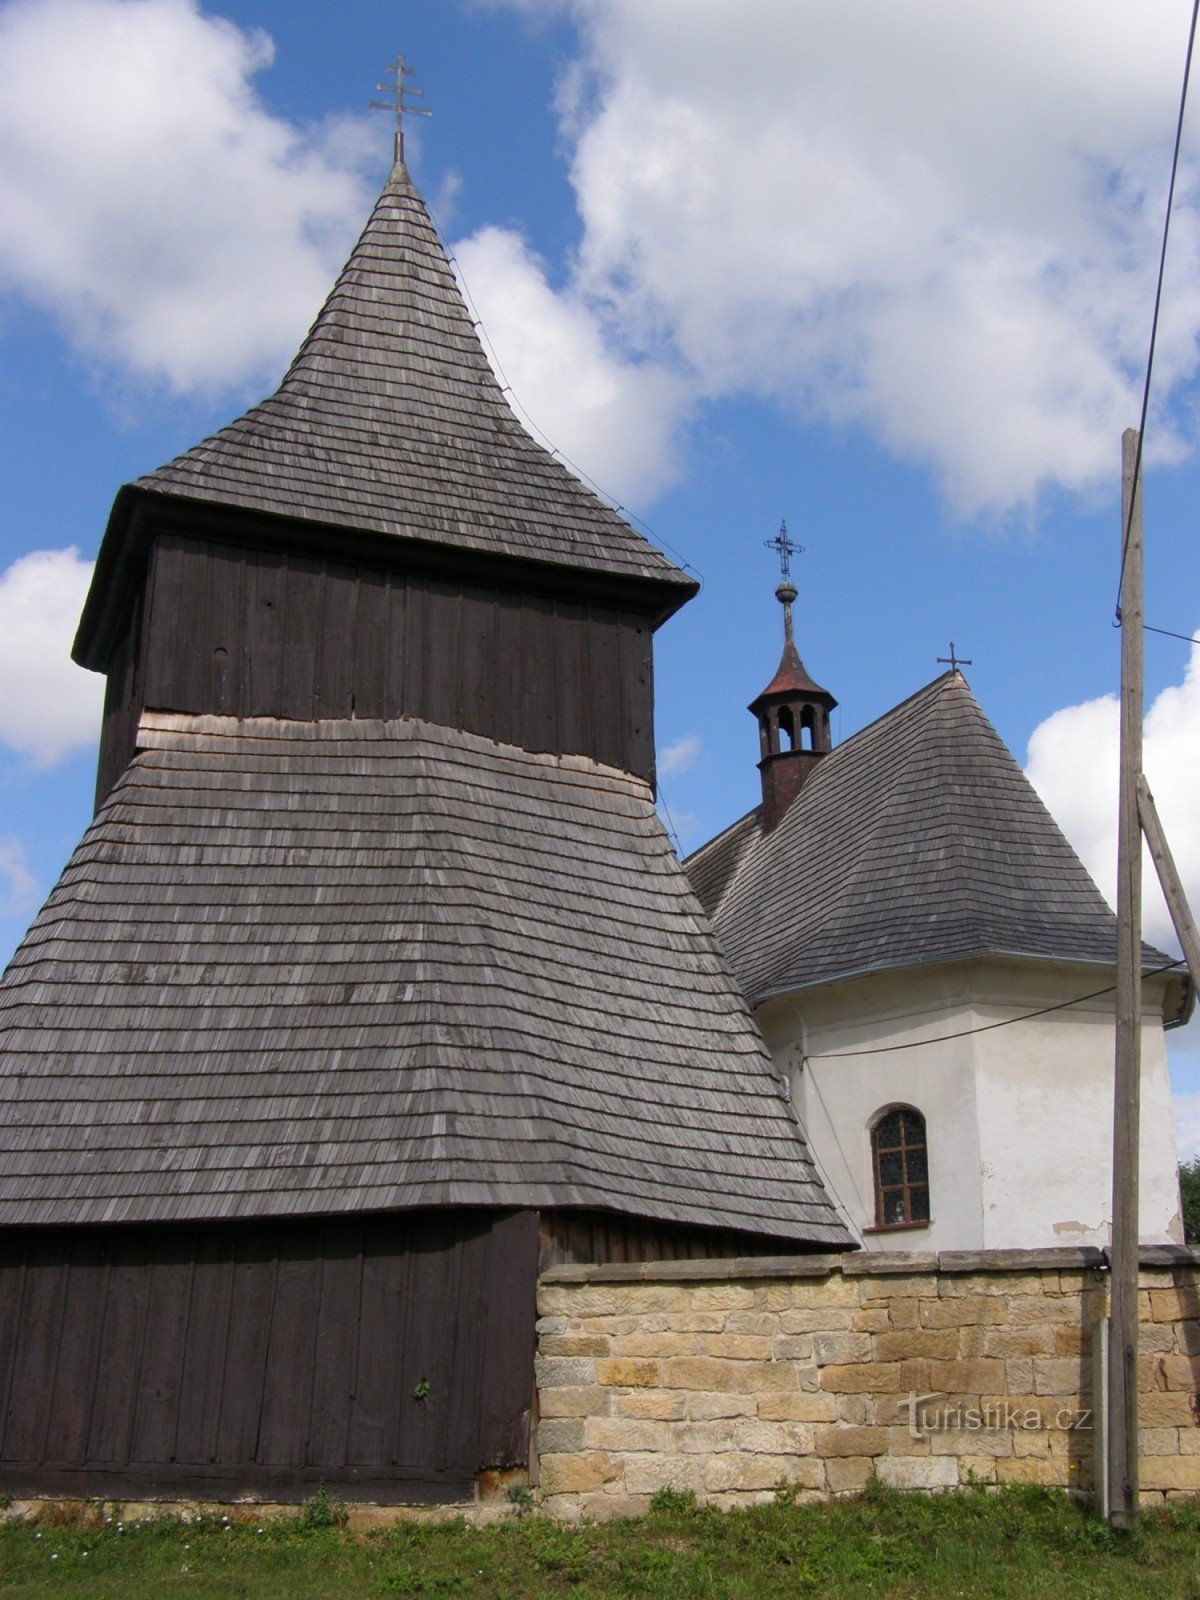 Vysočany - église en bois de St. Marchés avec beffroi en bois